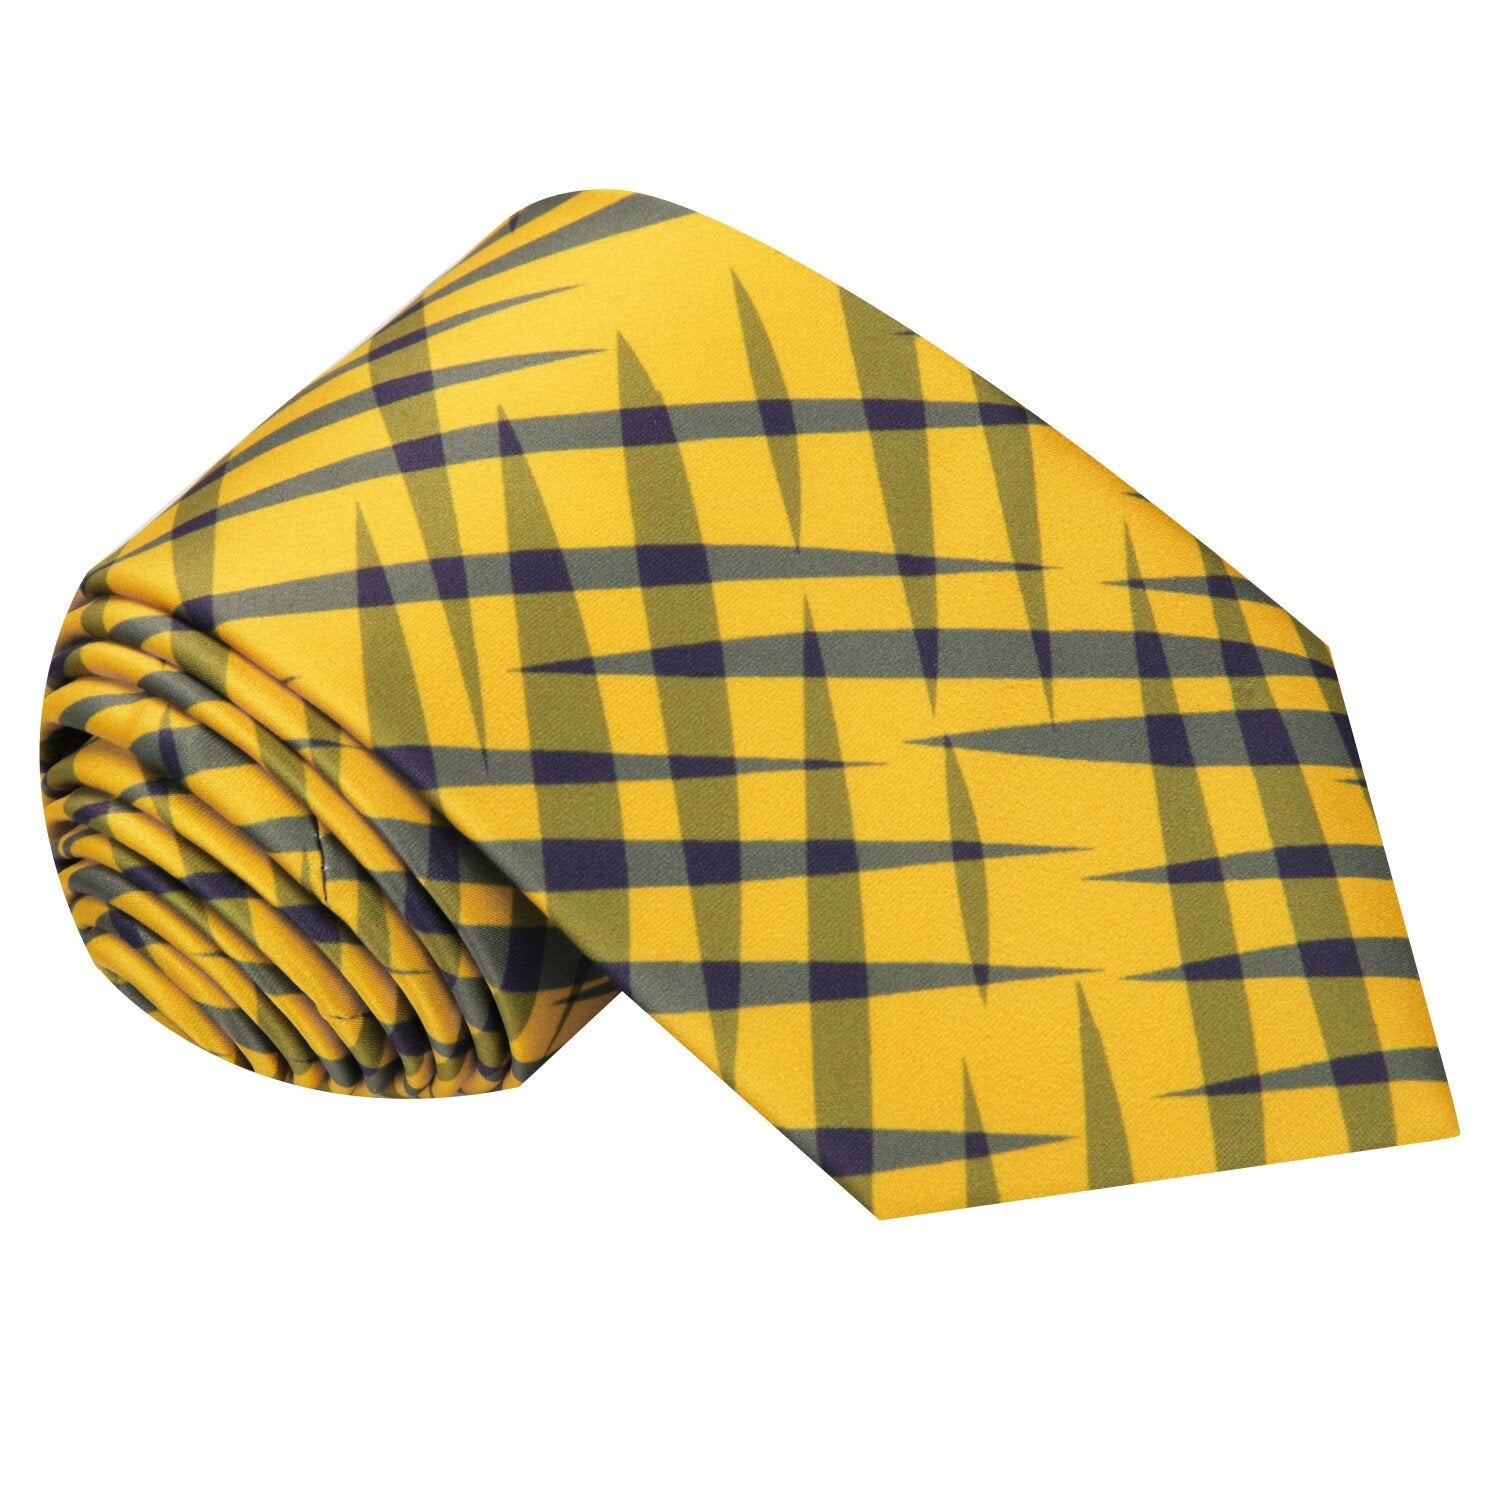 Single Tie: Solar Yellow with Grey Plaid Tie 